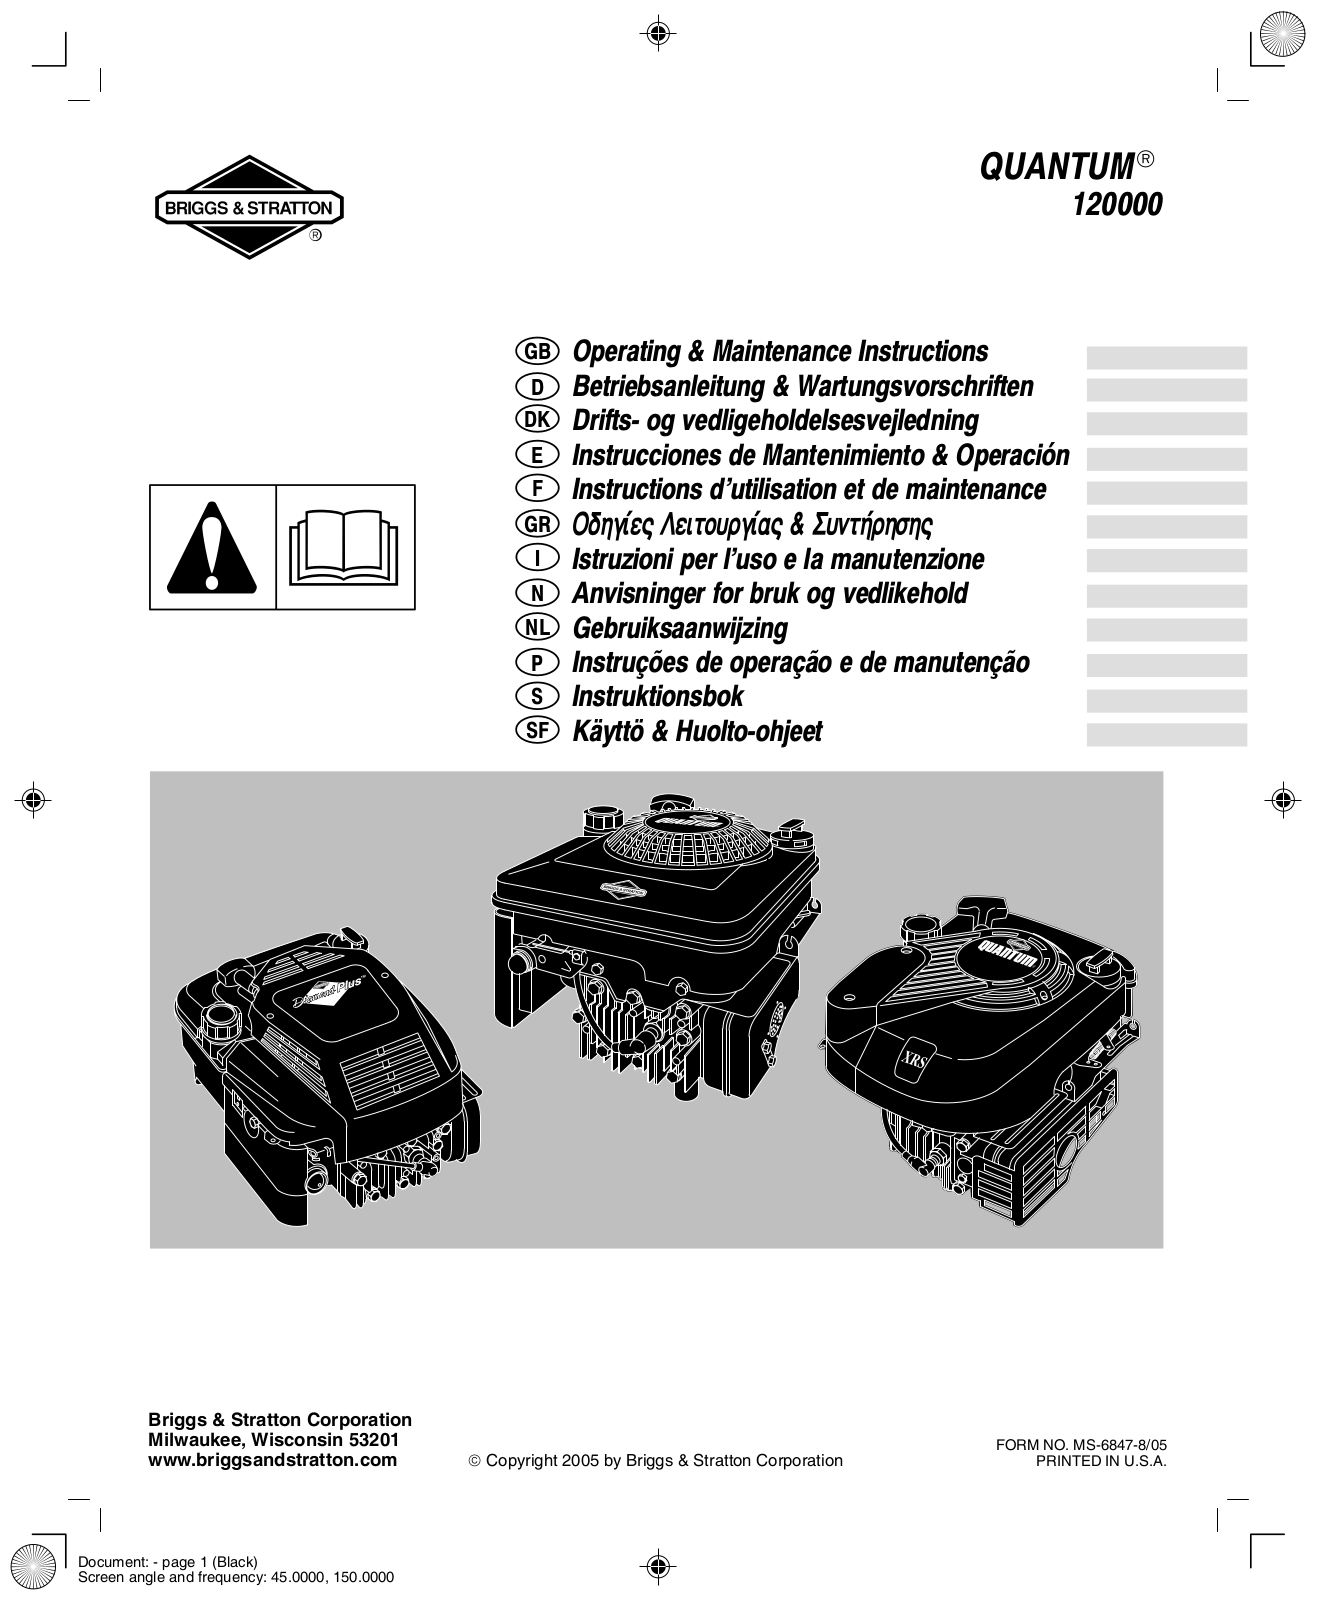 Briggs & Stratton QUANTUM 120000 User Manual